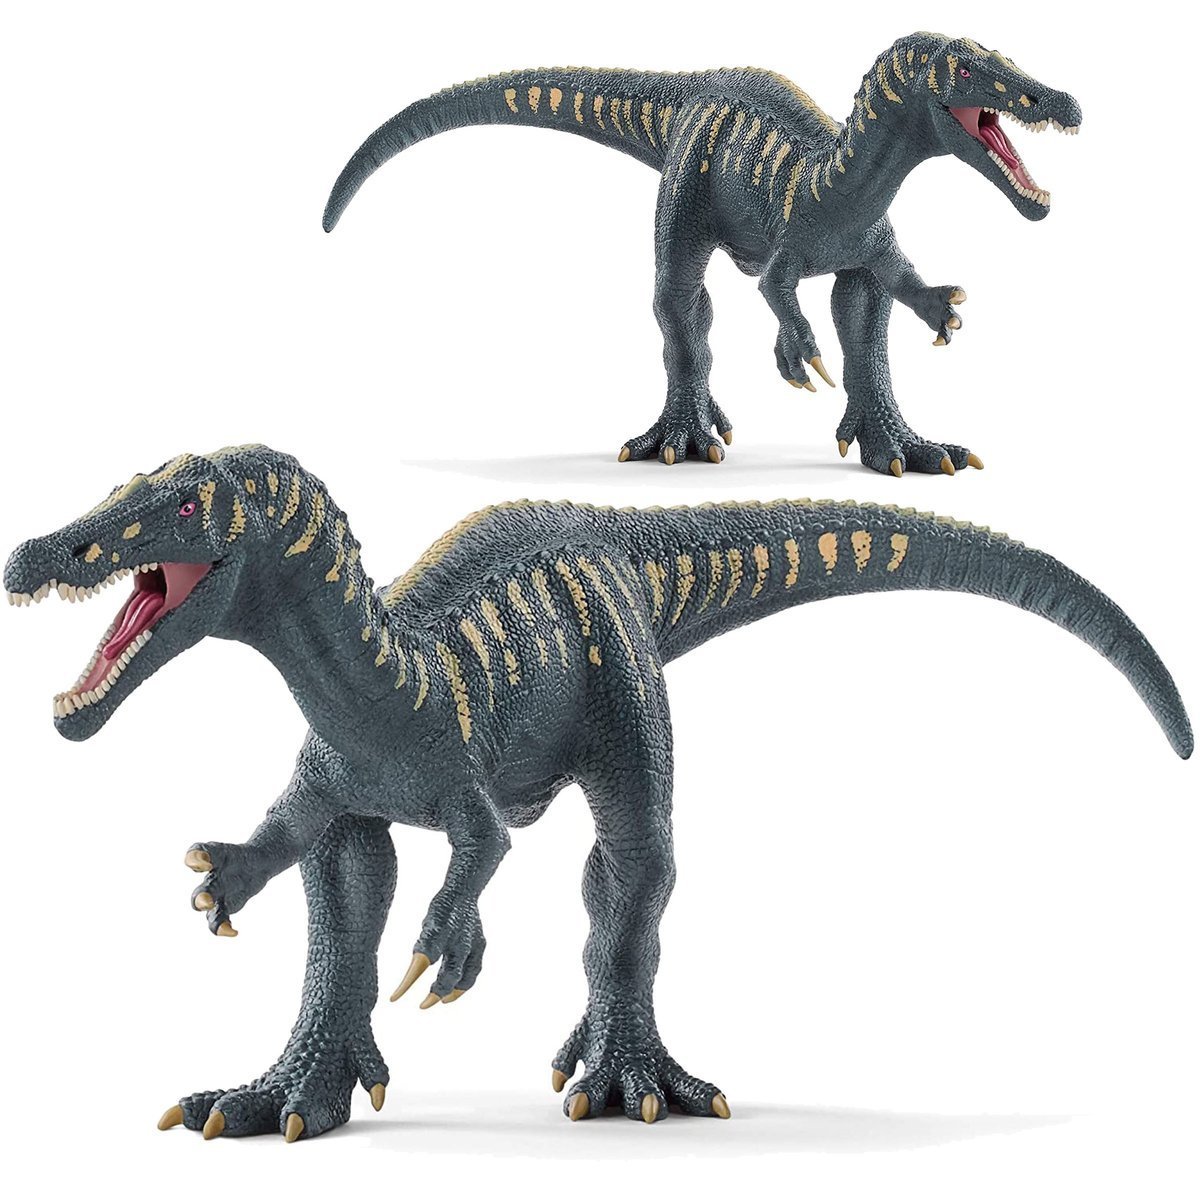 SCHLEICH Figurka Dinozaur Baryonyx 15022